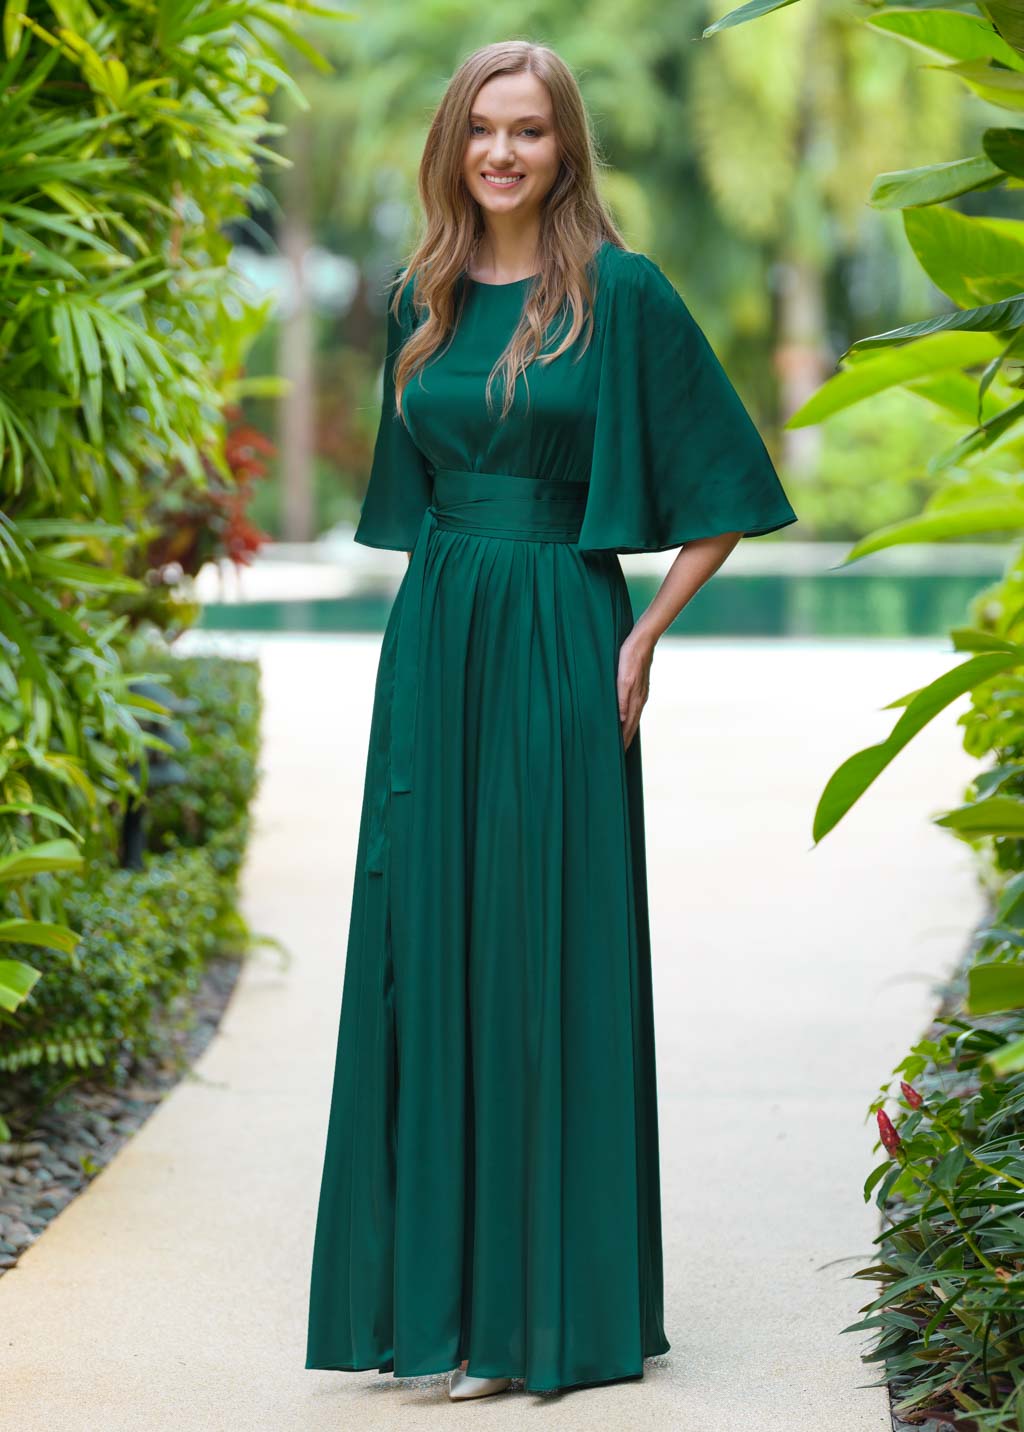 Dark green silk dress with belt